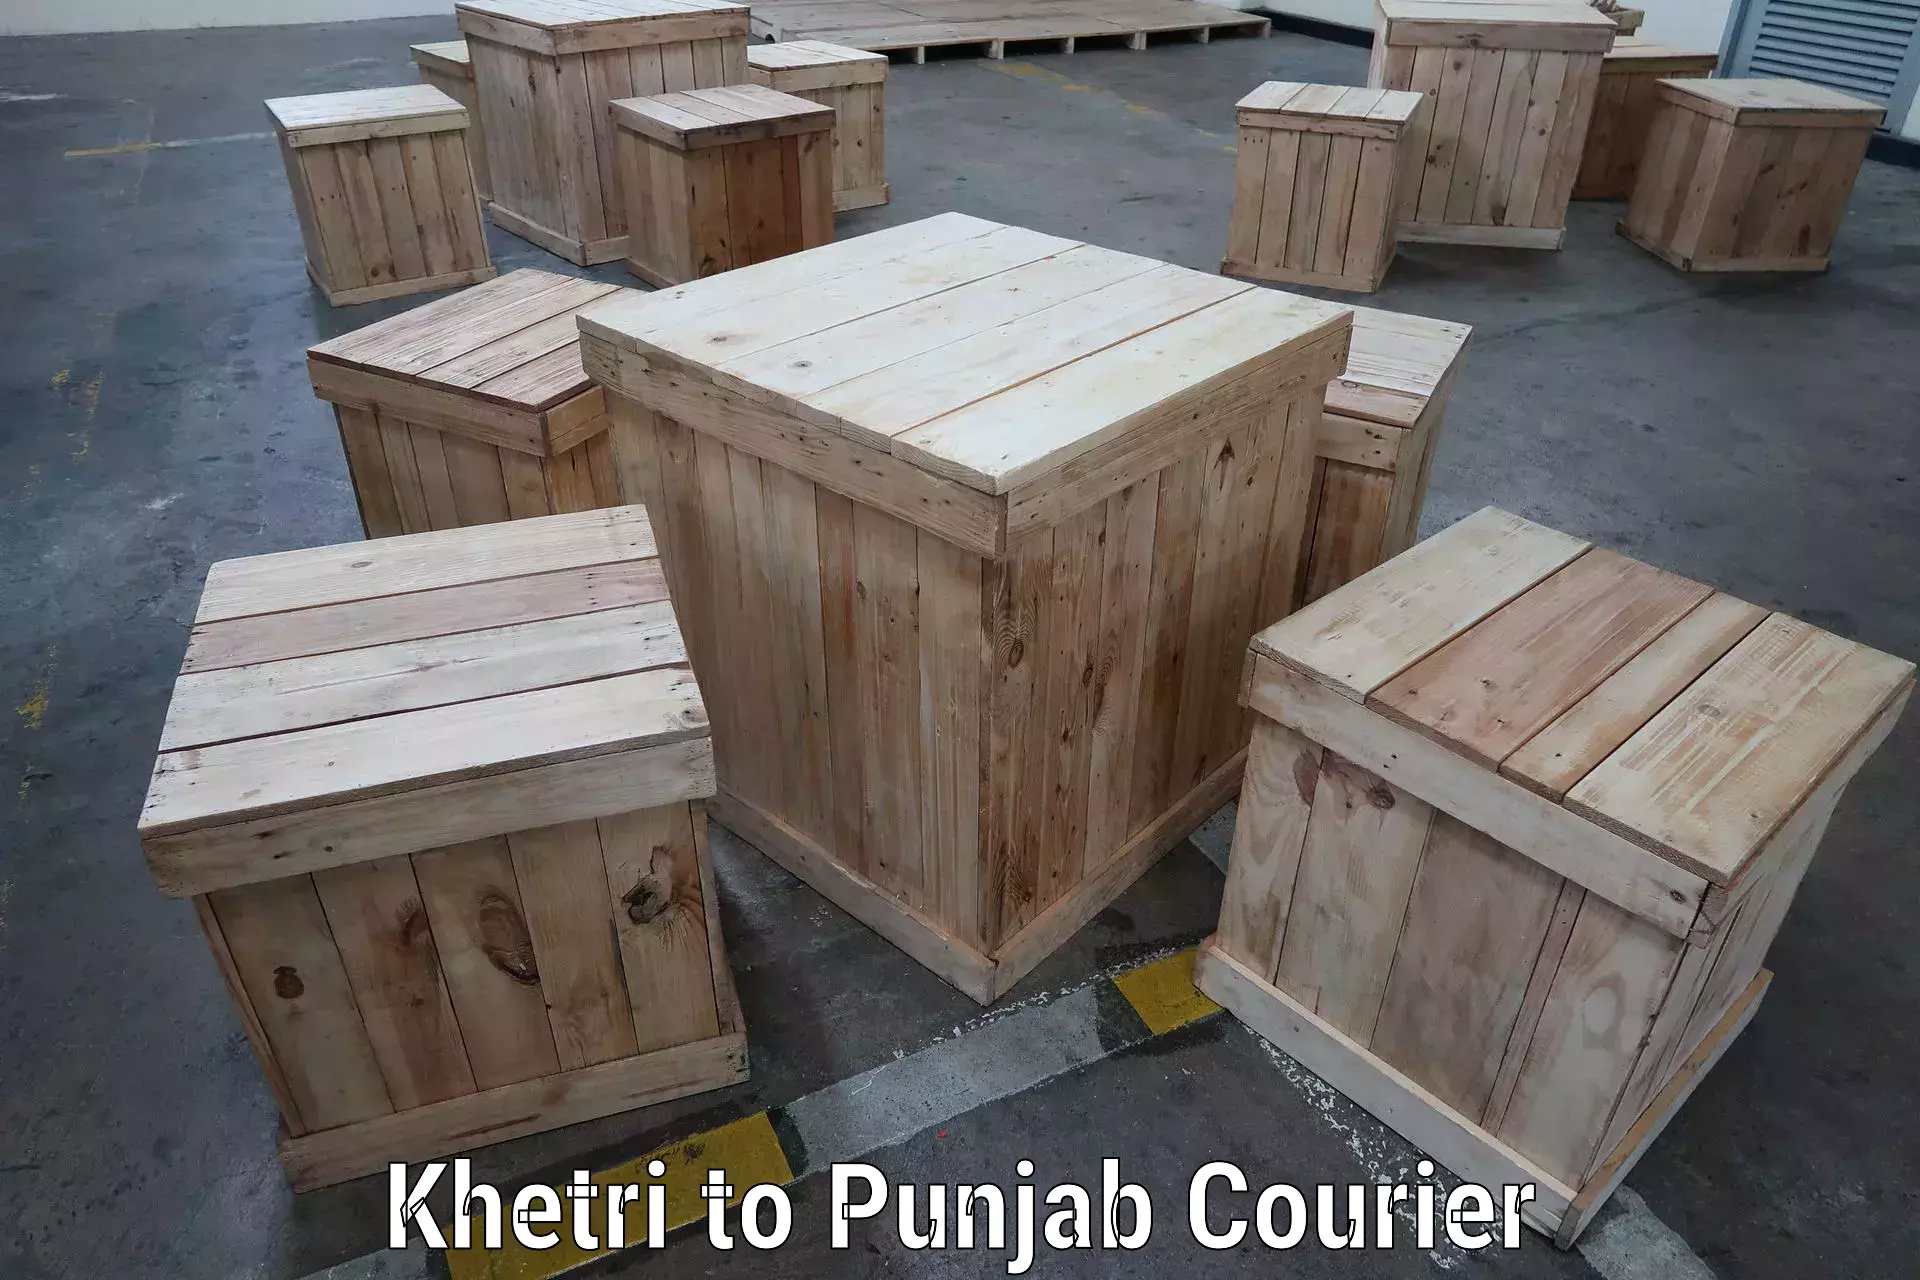 Flexible parcel services Khetri to Punjab